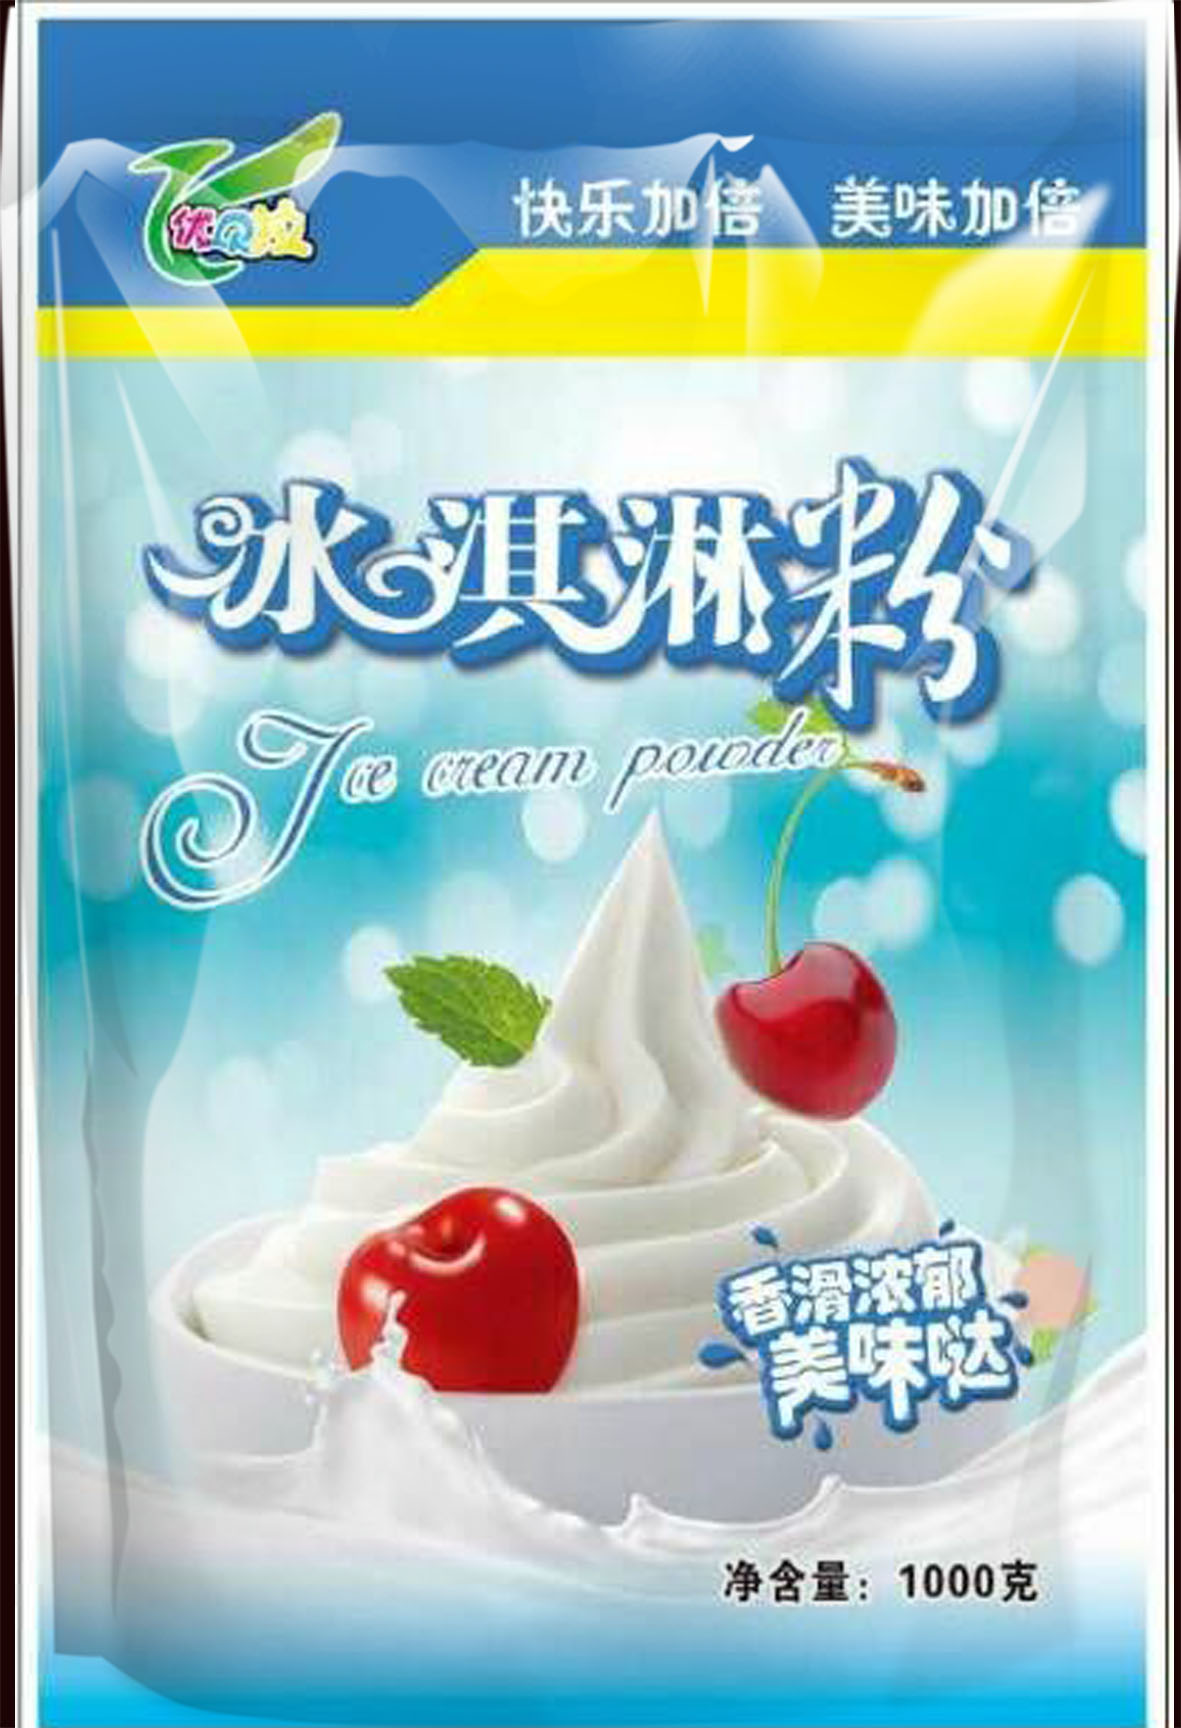 【热卖】德美林冰淇淋粉yz品牌【祖康食品】